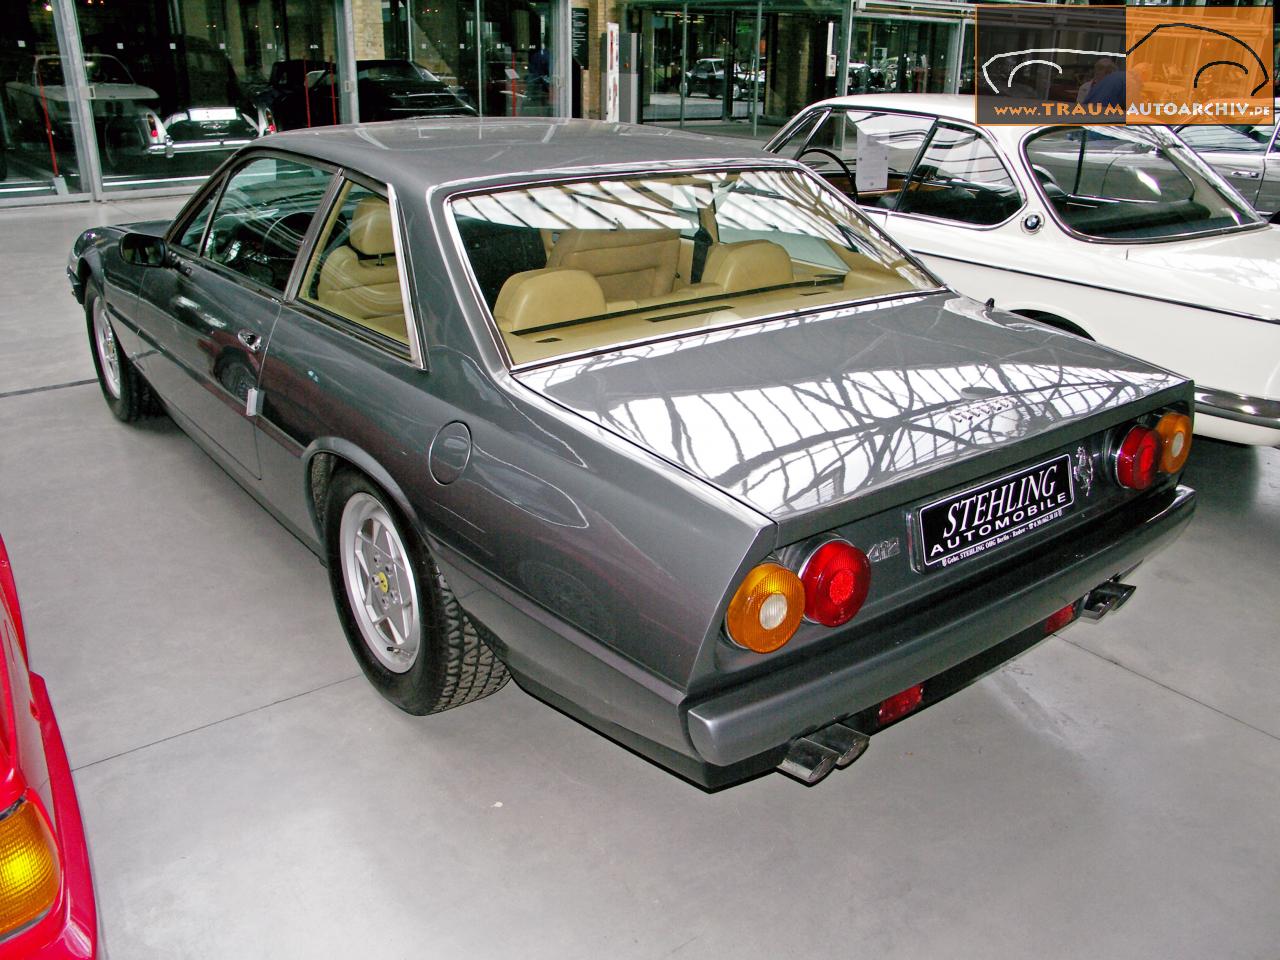 Ferrari 412 '1987 (3).jpg 186.7K